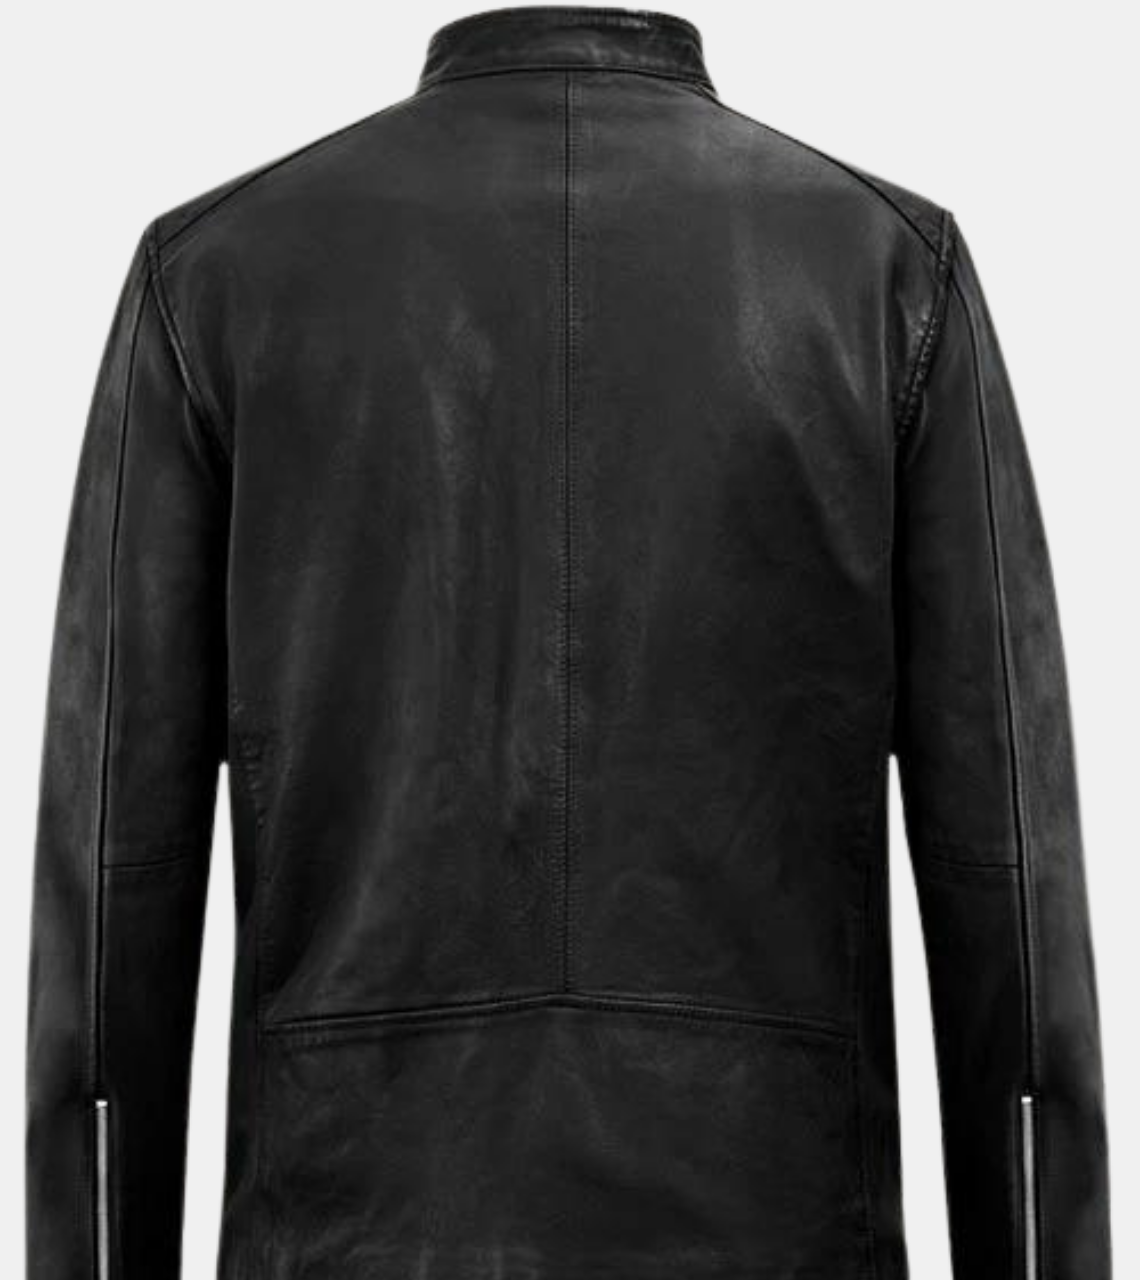 Gespare Men's Black Biker's Leather Jacket Back